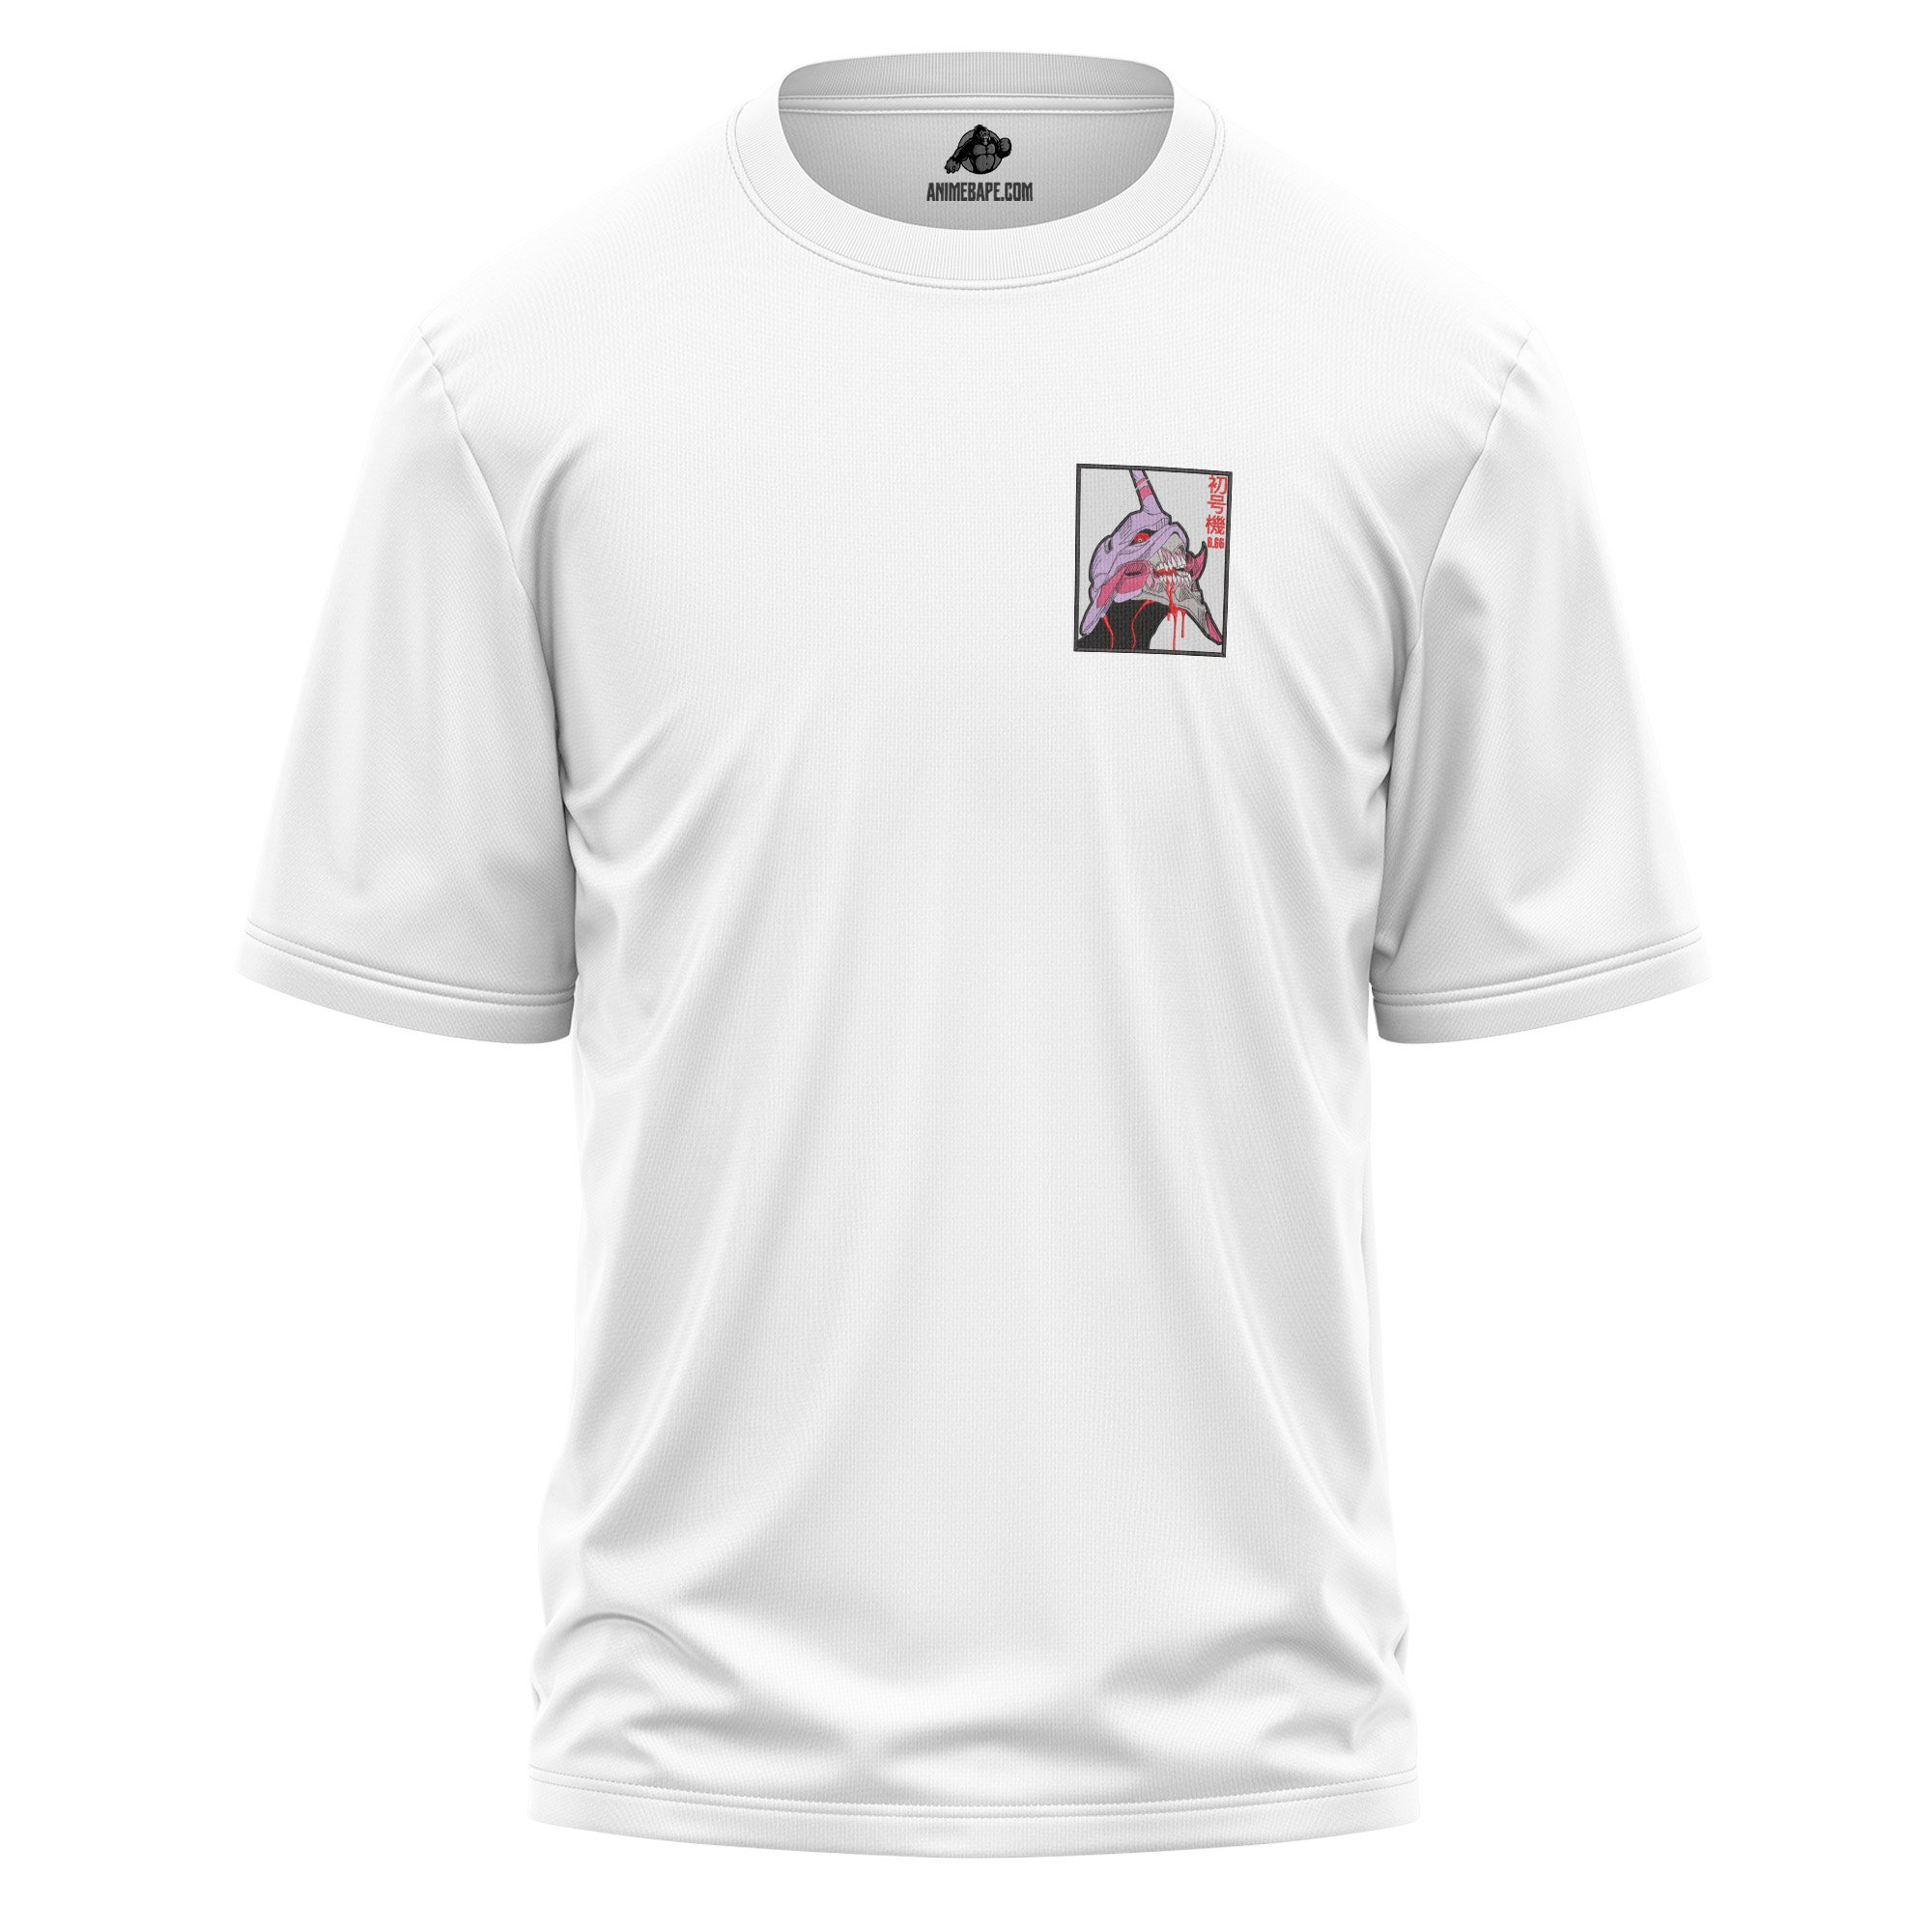 Evangelion Unit 01 Neon Genesis Evangelion Embroidered T Shirt